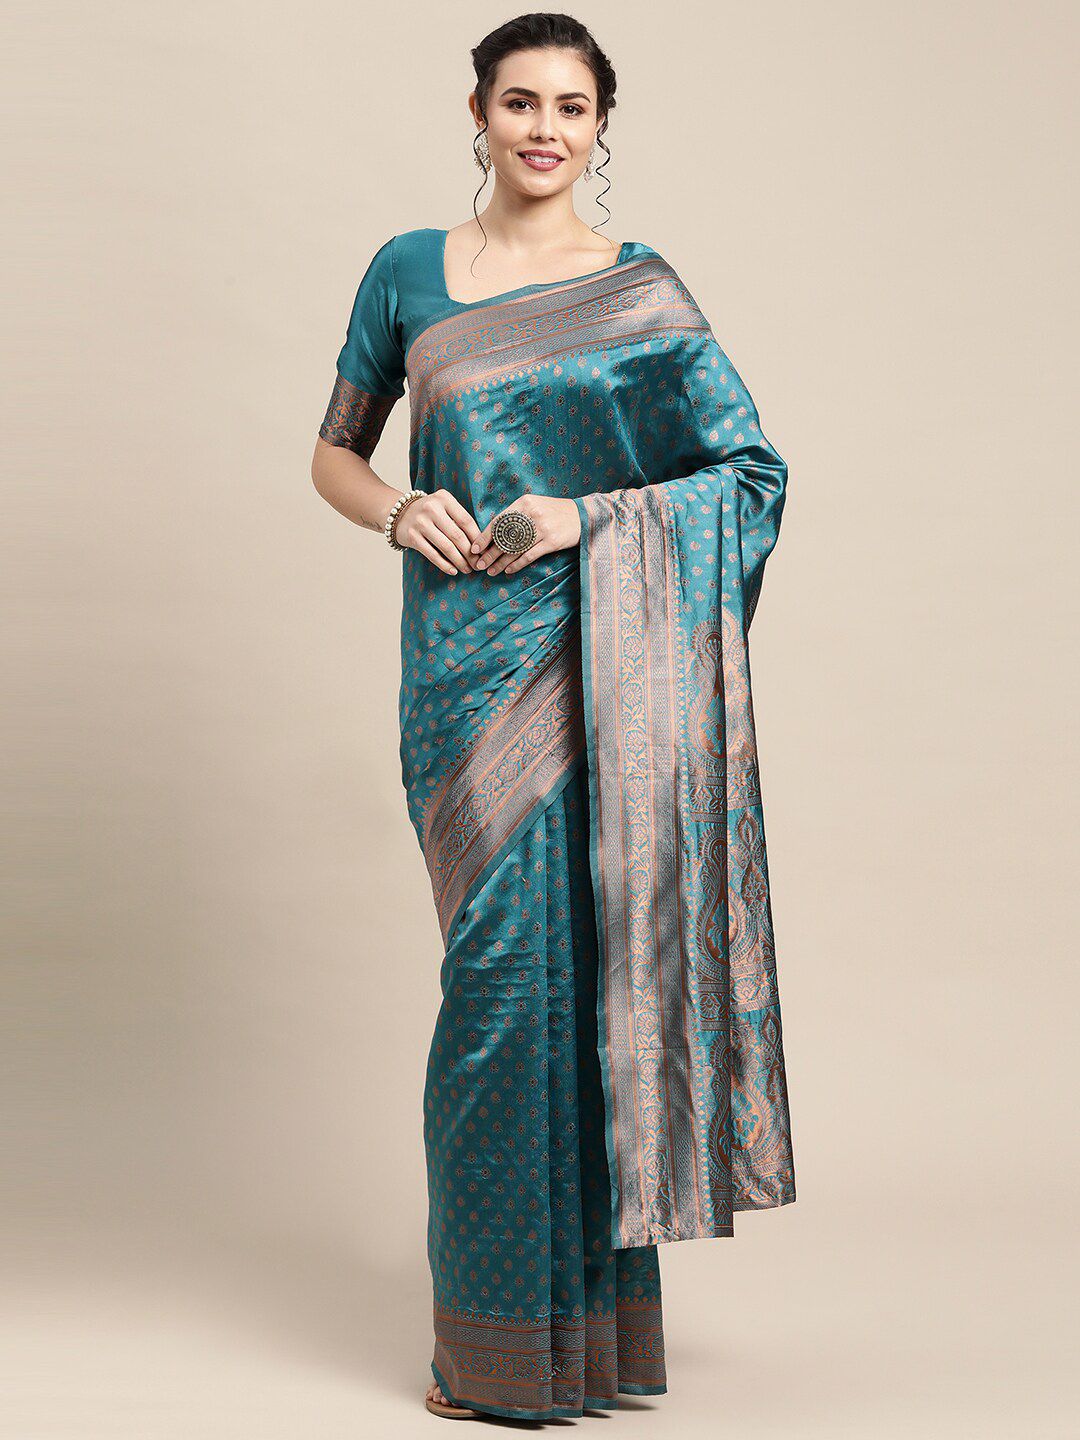 Saree mall Teal & Copper-Toned Paisley Zari Silk Blend Banarasi Sarees Price in India